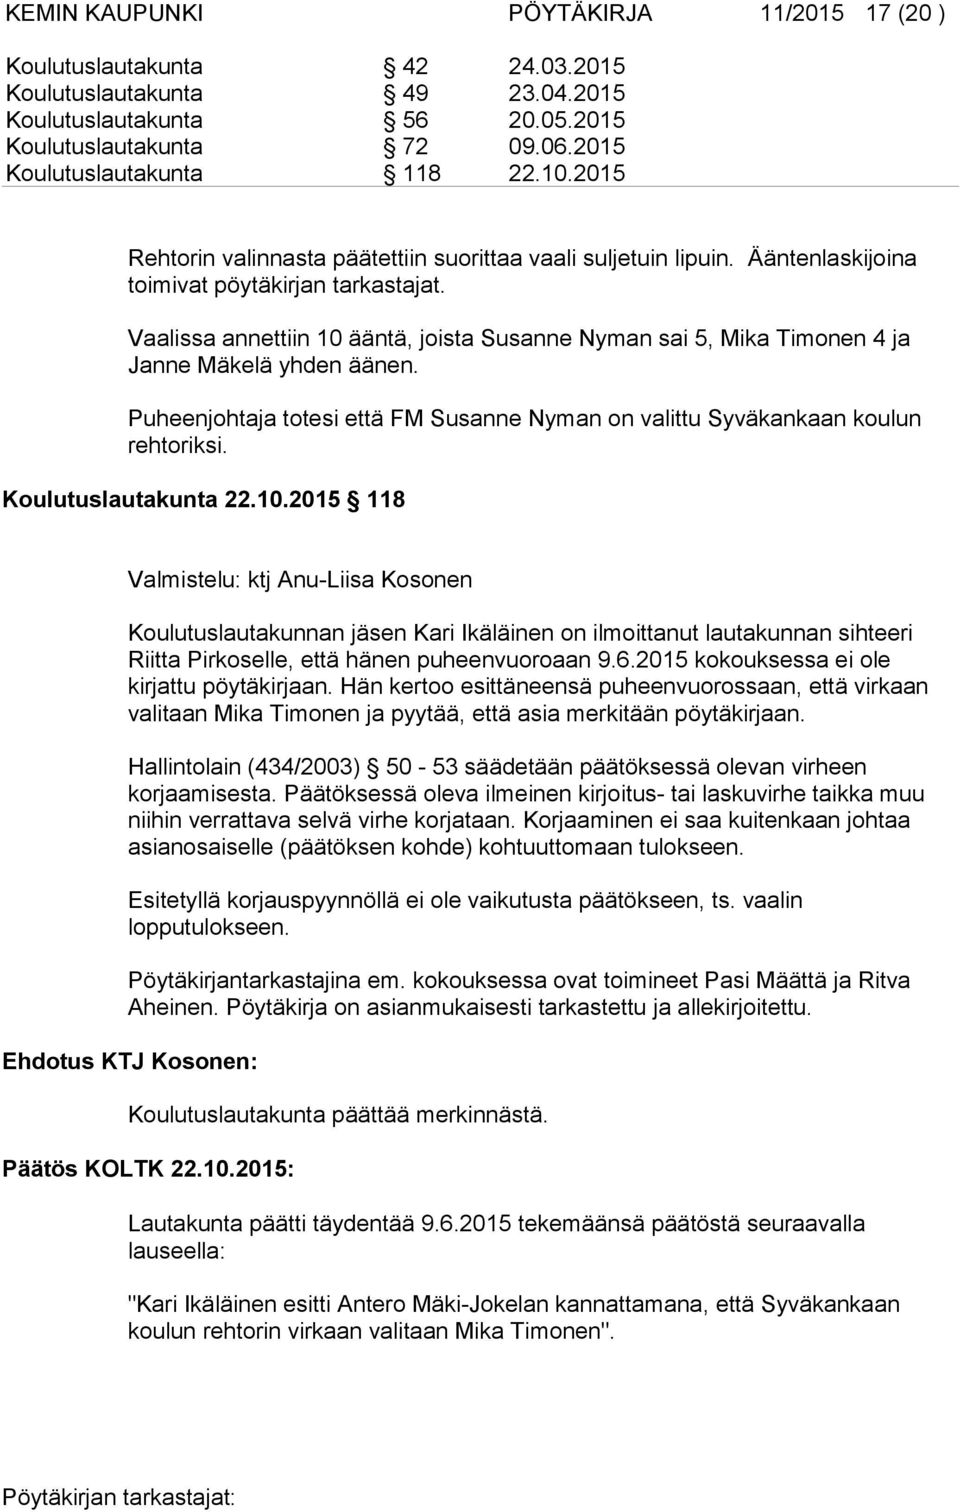 Vaalissa annettiin 10 ääntä, joista Susanne Nyman sai 5, Mika Timonen 4 ja Janne Mäkelä yhden äänen. Puheenjohtaja totesi että FM Susanne Nyman on valittu Syväkankaan koulun rehtoriksi.